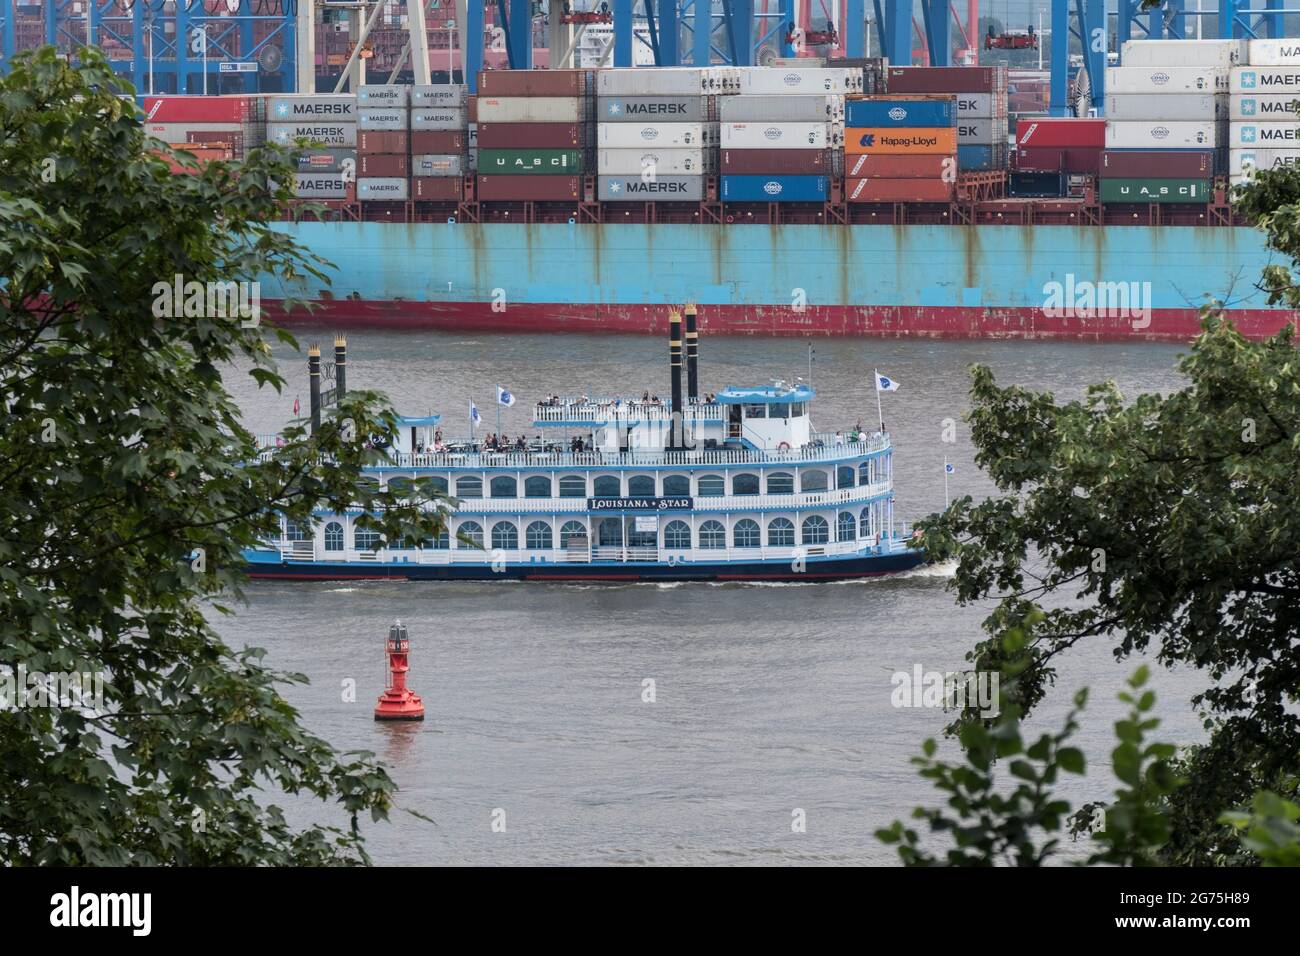 Barkasse auf der Elbe im Hamburger Hafen Stockfoto